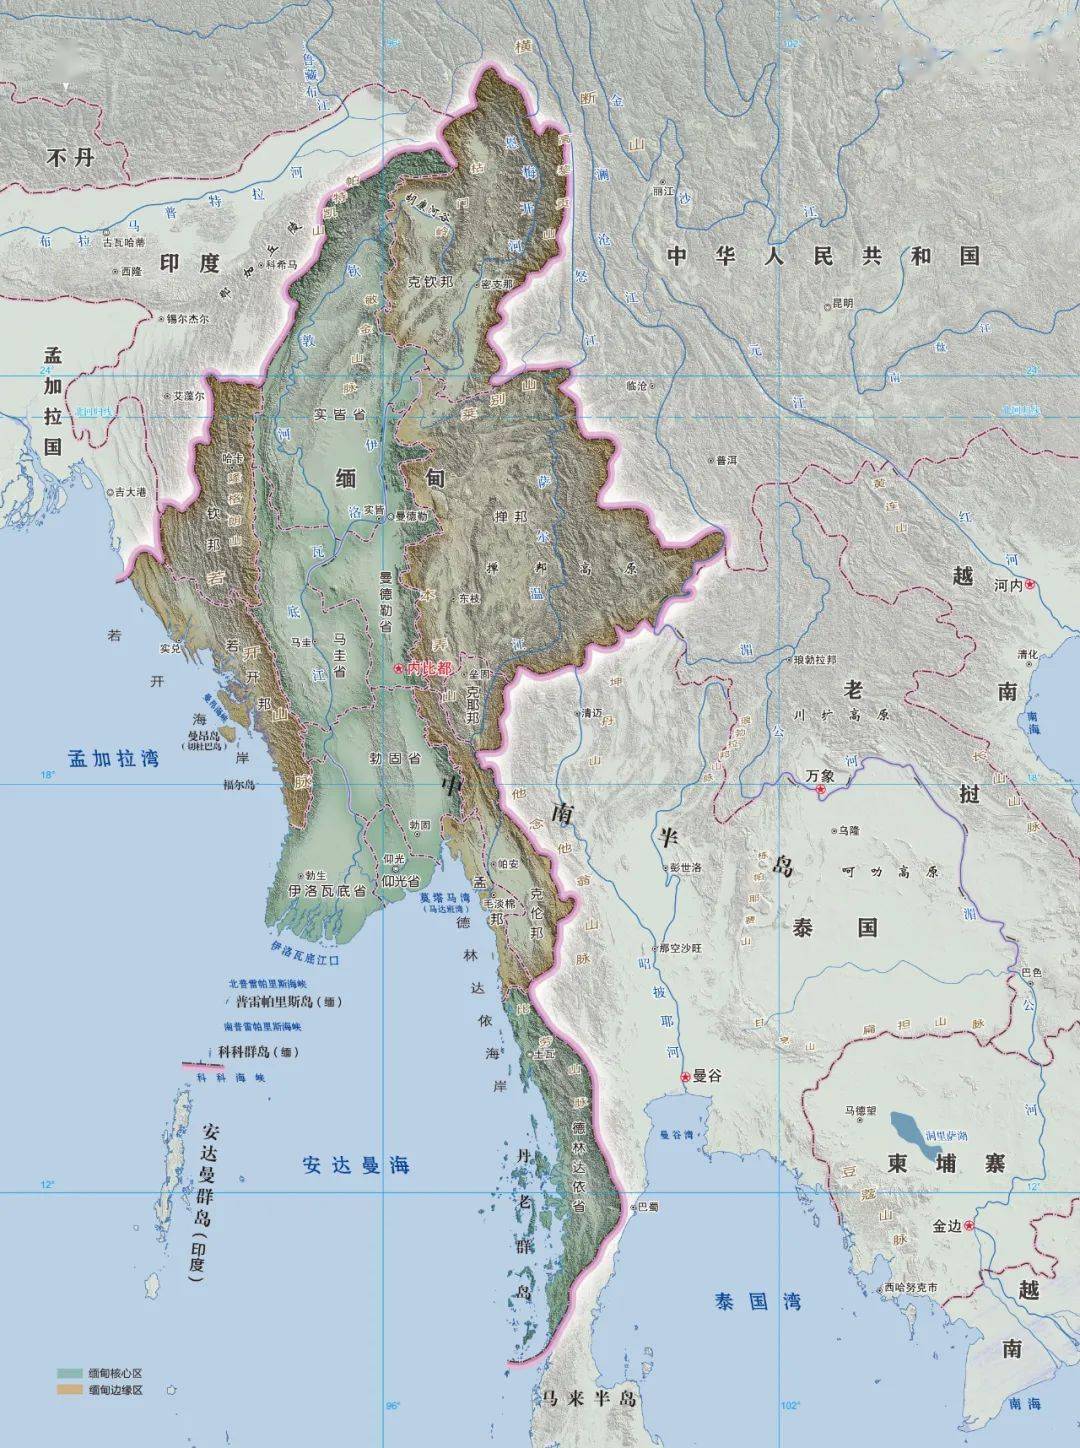 我们知道,缅甸的主体民族是缅族,占了缅甸 5 700 万人口的 2/3,而